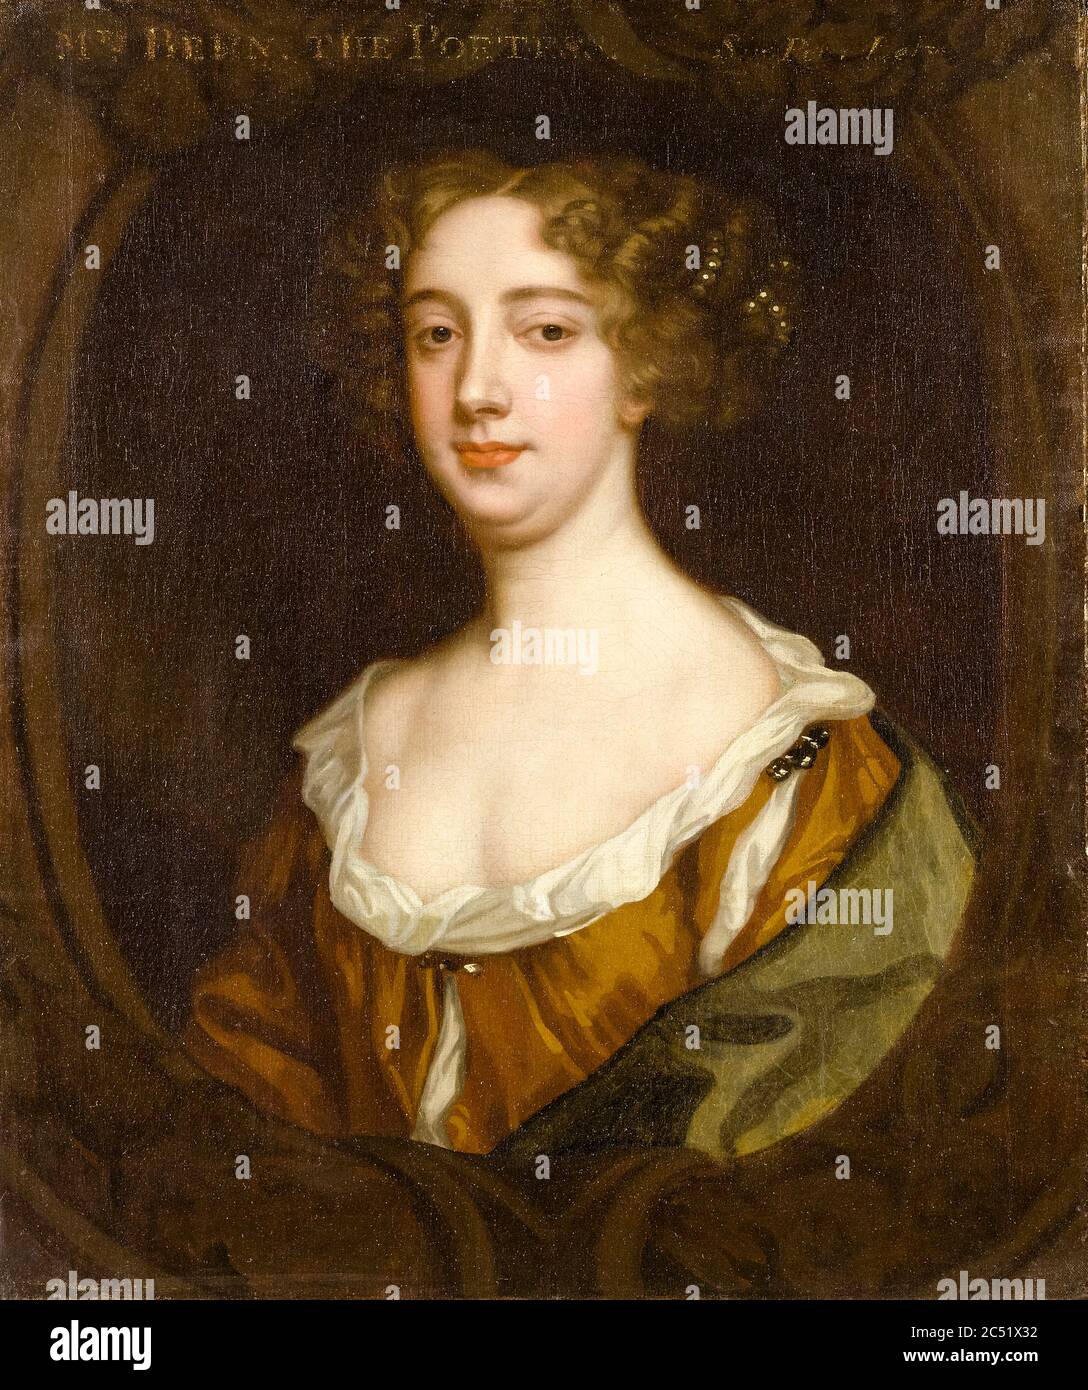 Aphra Behn (1640-1689), dramaturge anglaise, poète, traductrice et écrivain de fiction, portrait peint par Sir Peter Lely, vers 1670 Banque D'Images